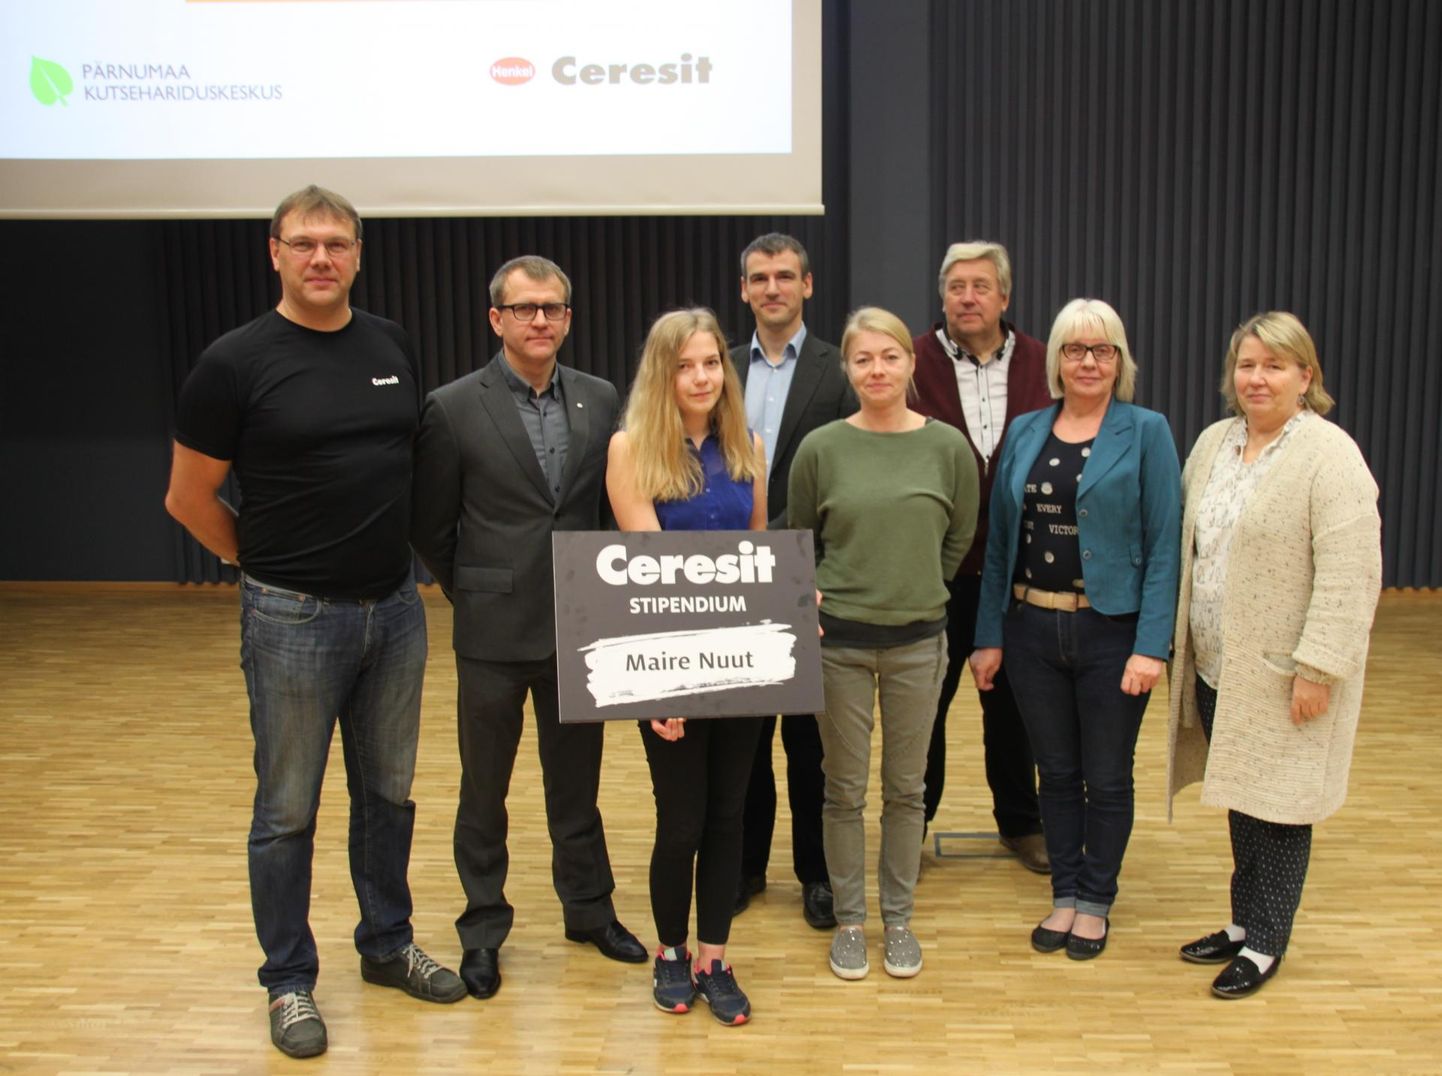 1200 euro suuruse Ceresiti stipendiumi pälvinud Maire Nuut koos õpetajate ja ettevõtte esindajatega.